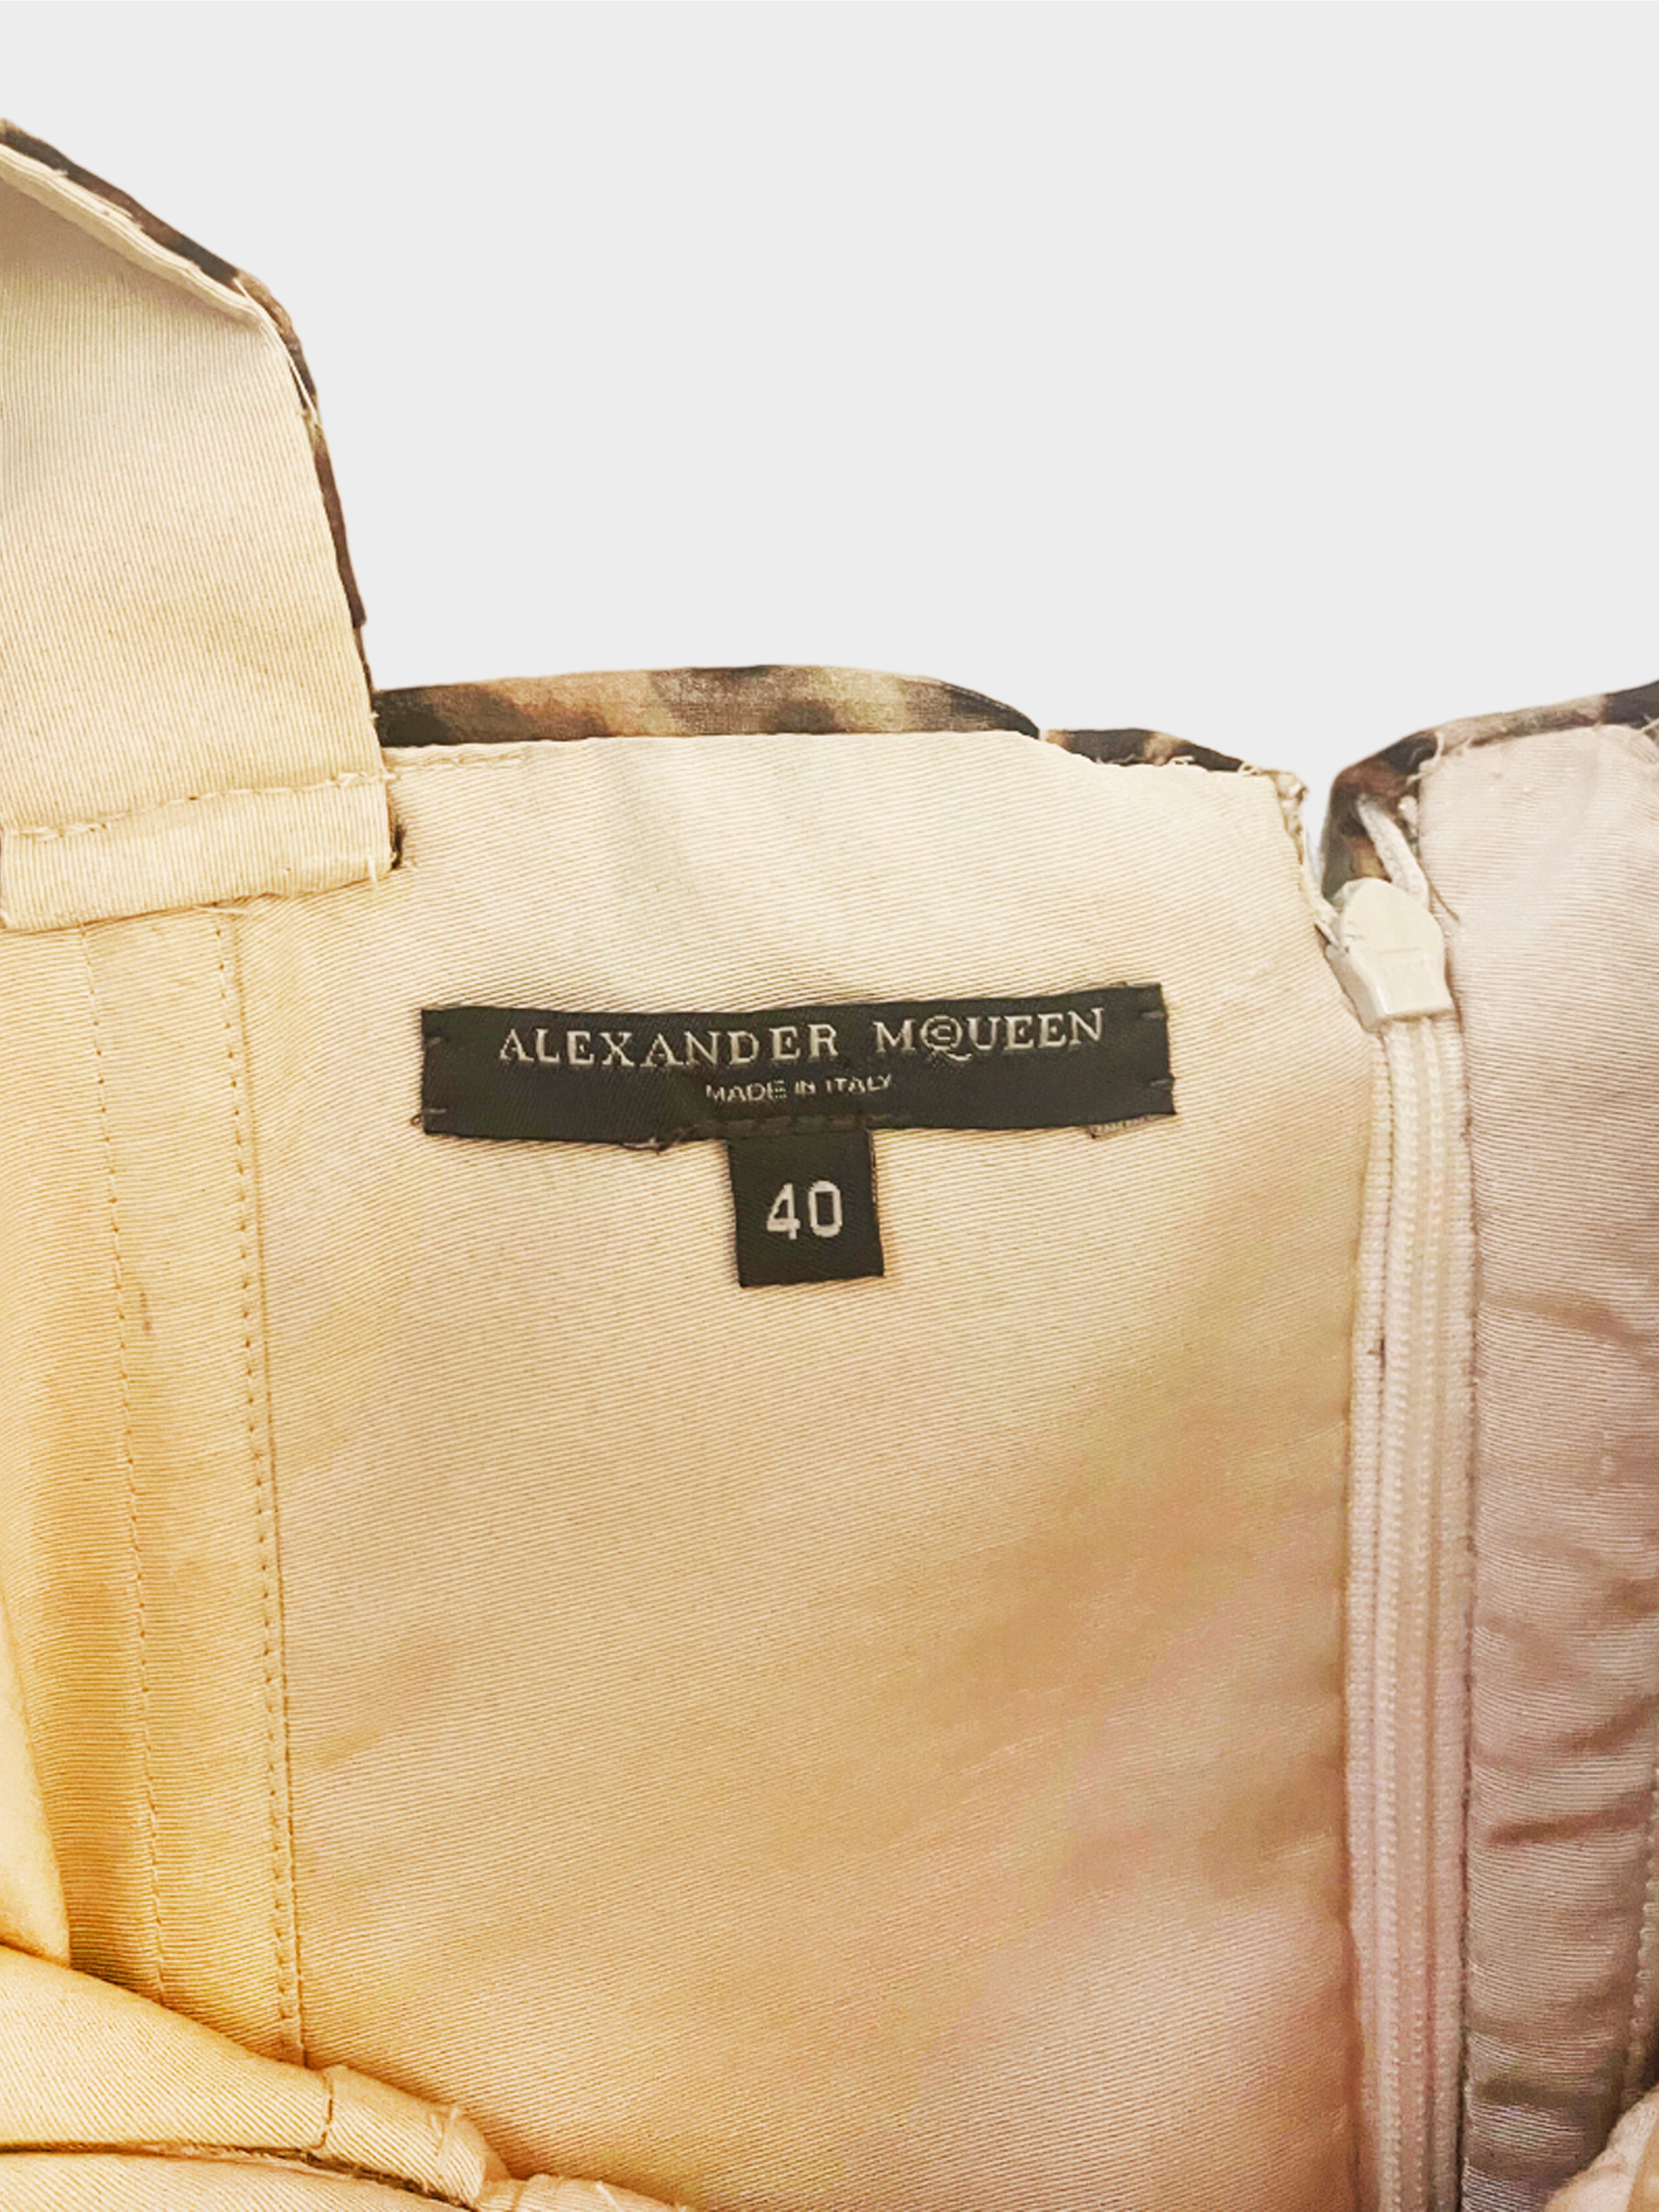 Alexander McQueen FW 2005 Leopard Print Dress